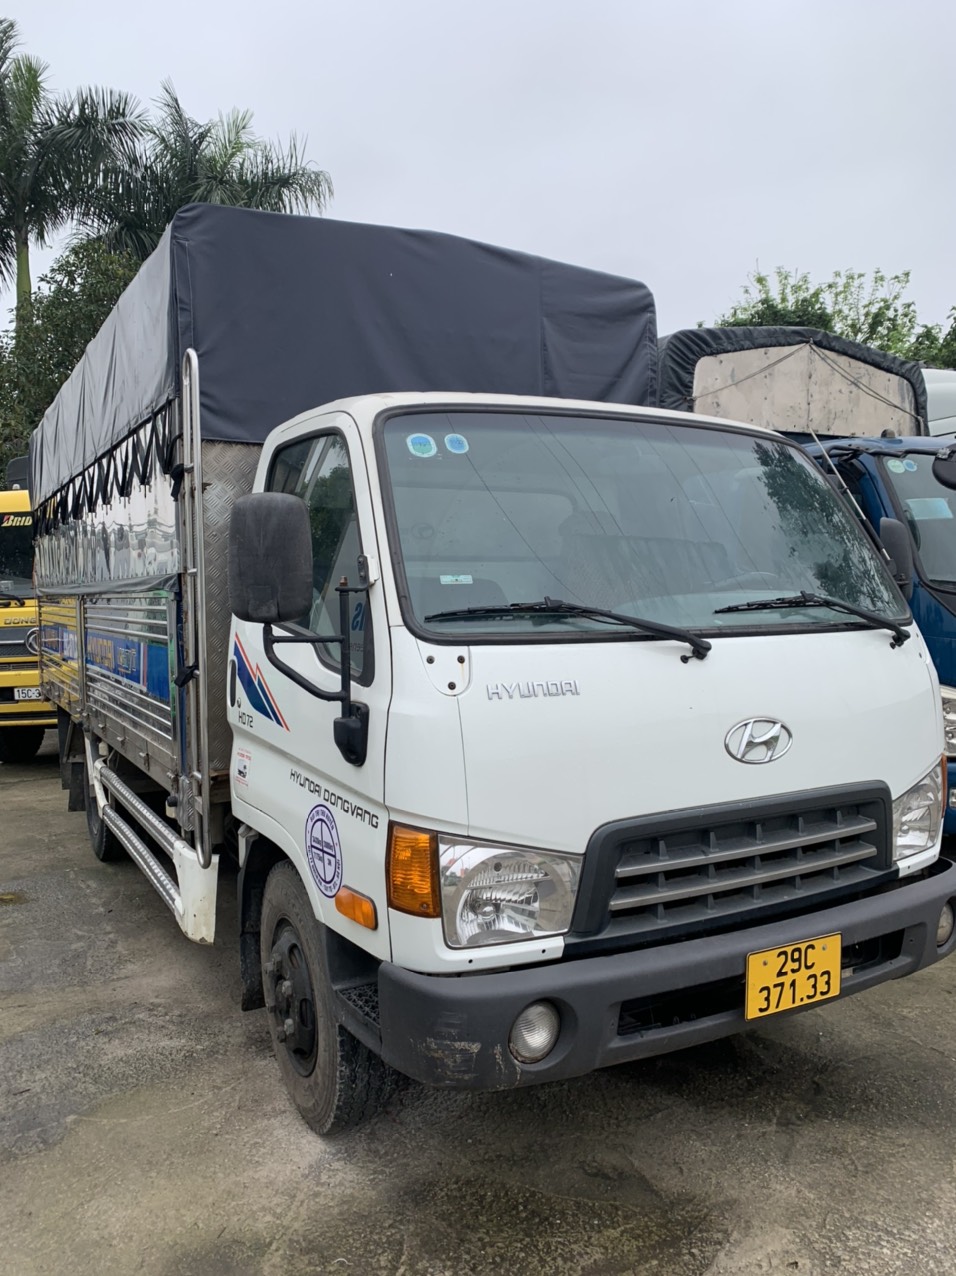 Xe bán tải cũ Hà Nội  Địa chỉ mua xe bán tải cũ tại Hà Nội uy tín  Hiền  Trương Auto  Độ xe bán tải chuyên nghiệp